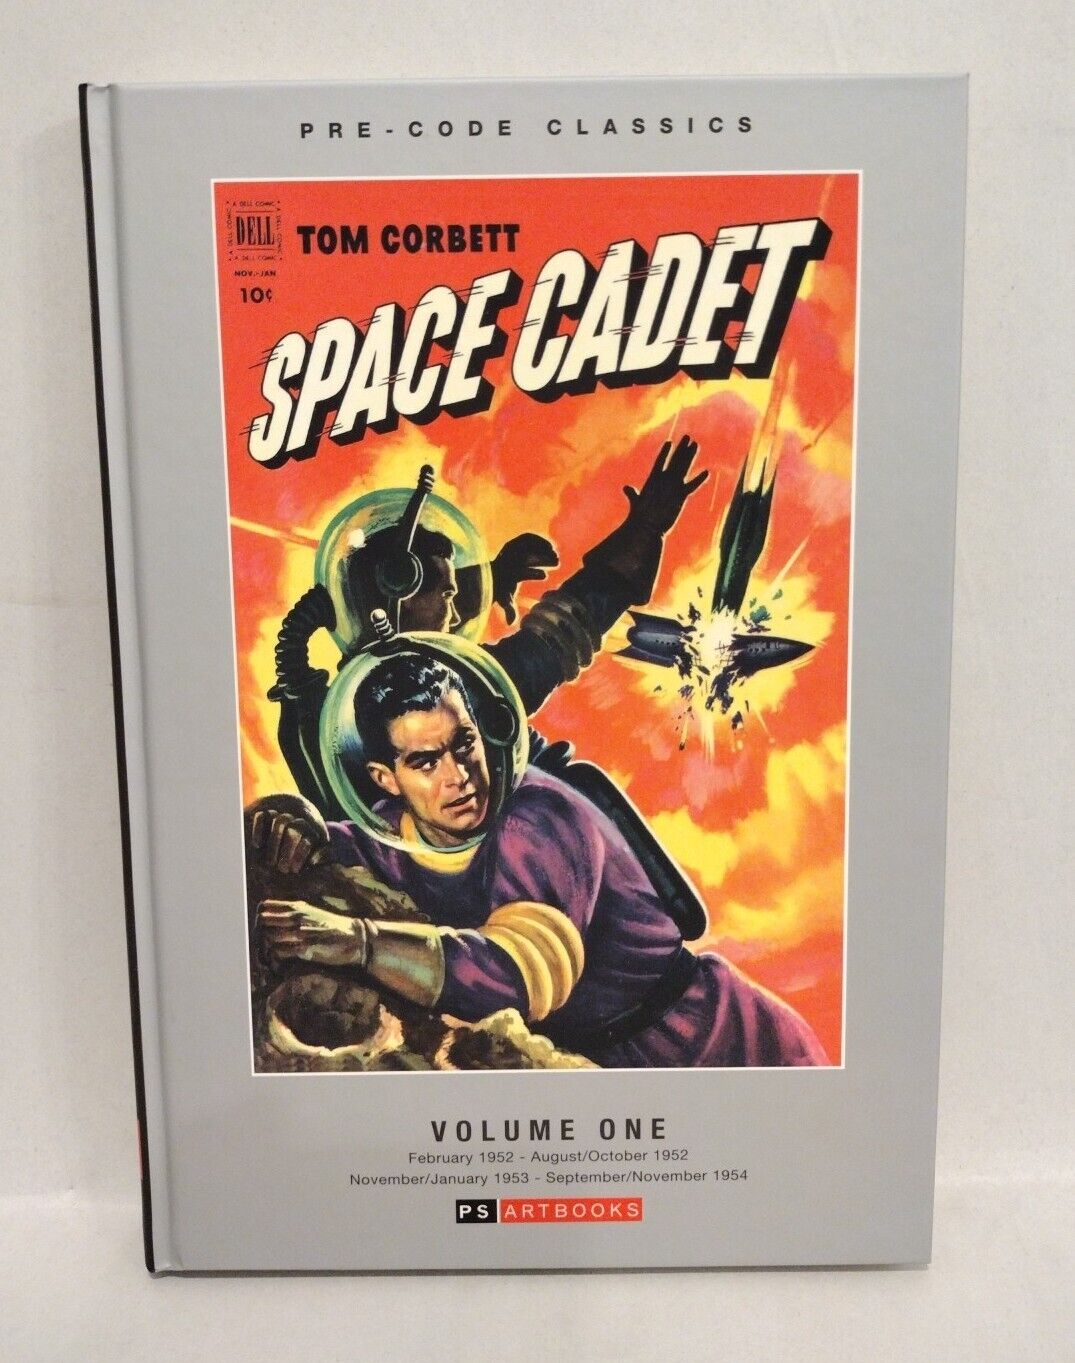  SPACE CADET VOL 1 HARDCOVER SLIPCASE EDITION Pre Code Classic TOM CORBETT 